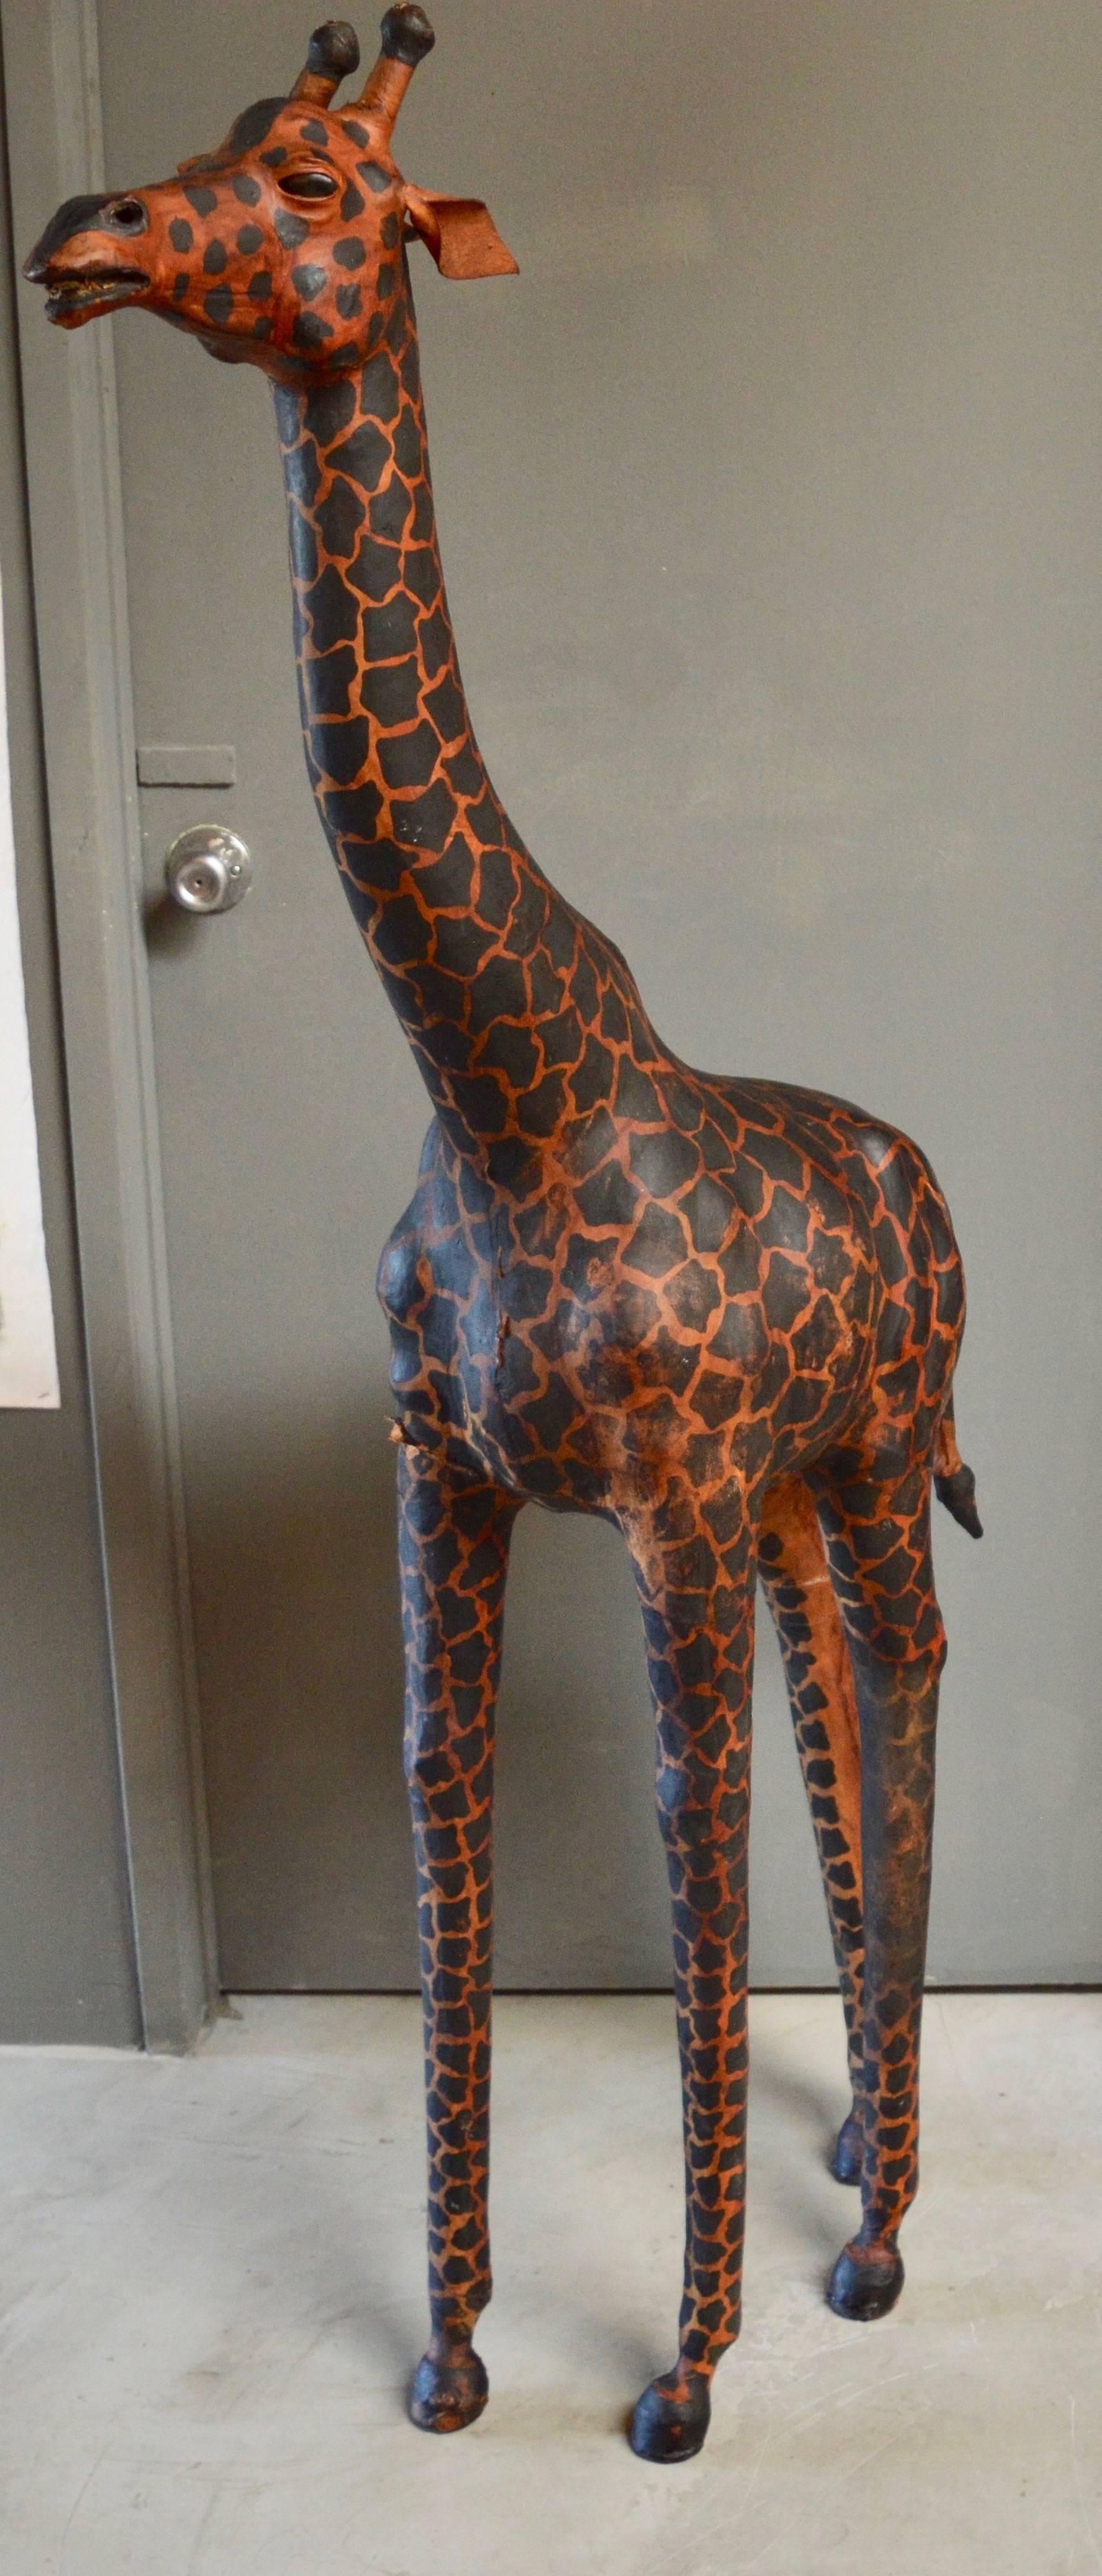 6ft giraffe statue